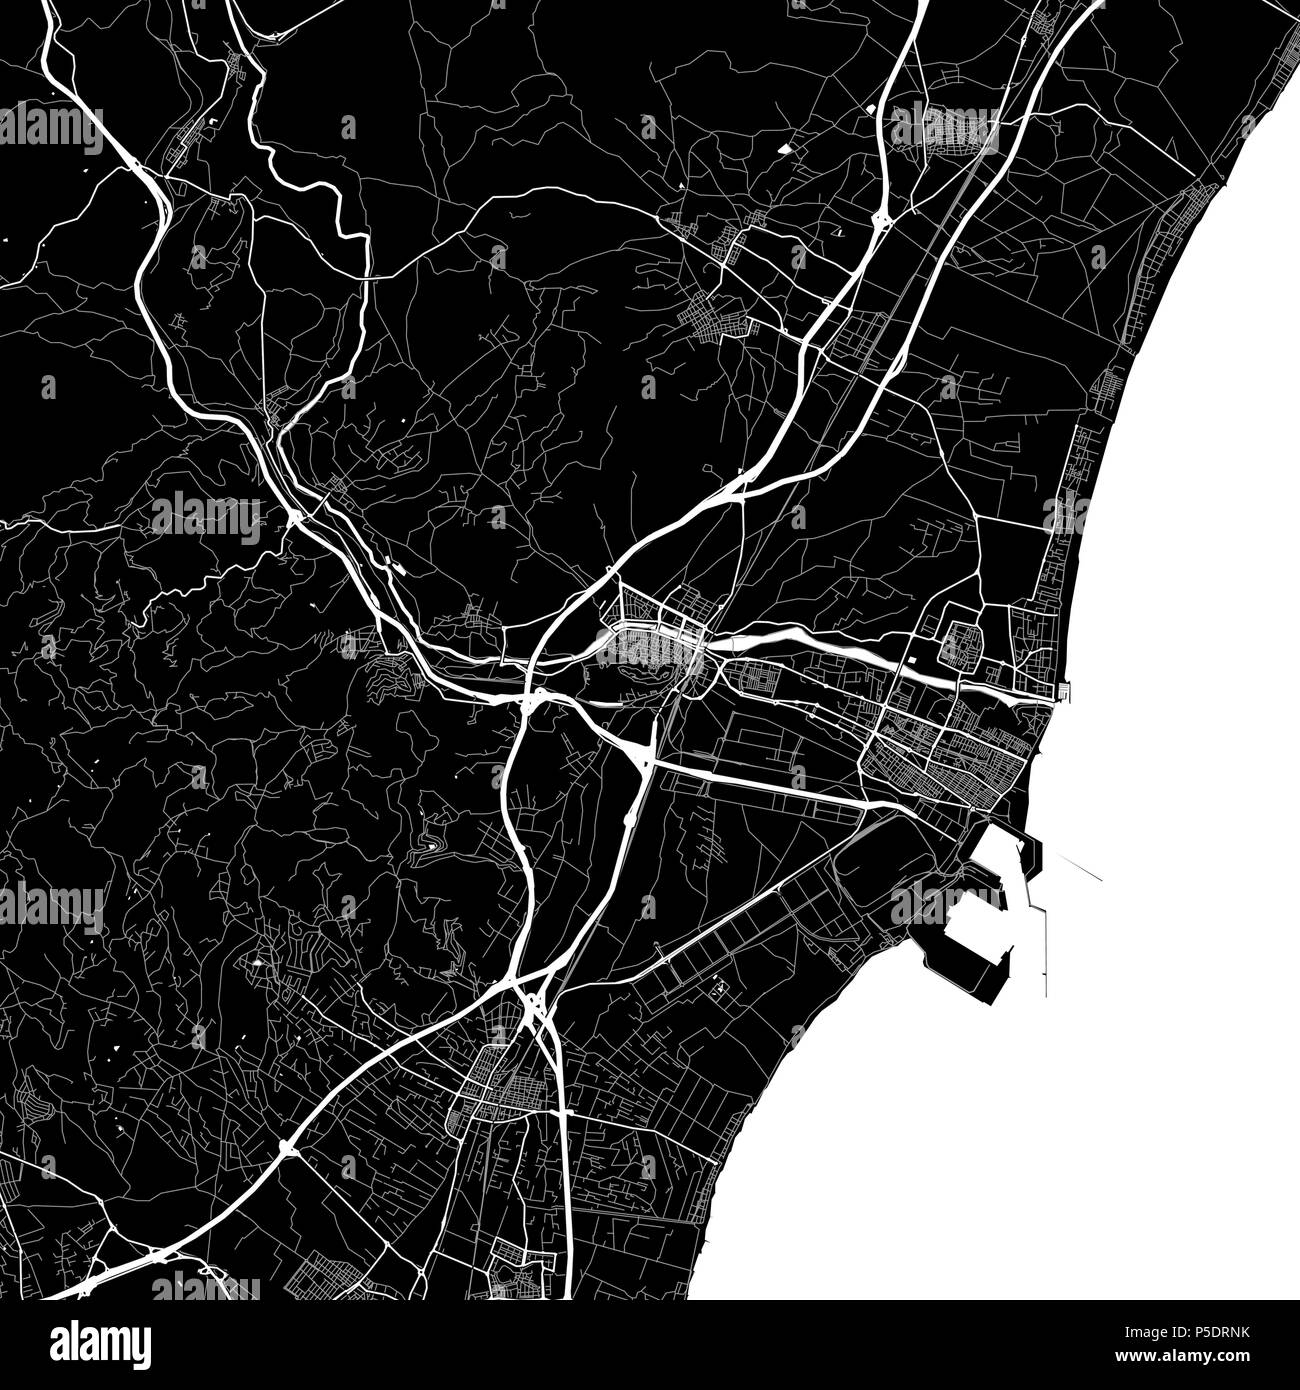 Carte de la région de Sagunto, Valence, Espagne. Fond sombre version pour l'infographie et des projets de marketing. Cette carte de Sagunto, Valence typique contient l Illustration de Vecteur